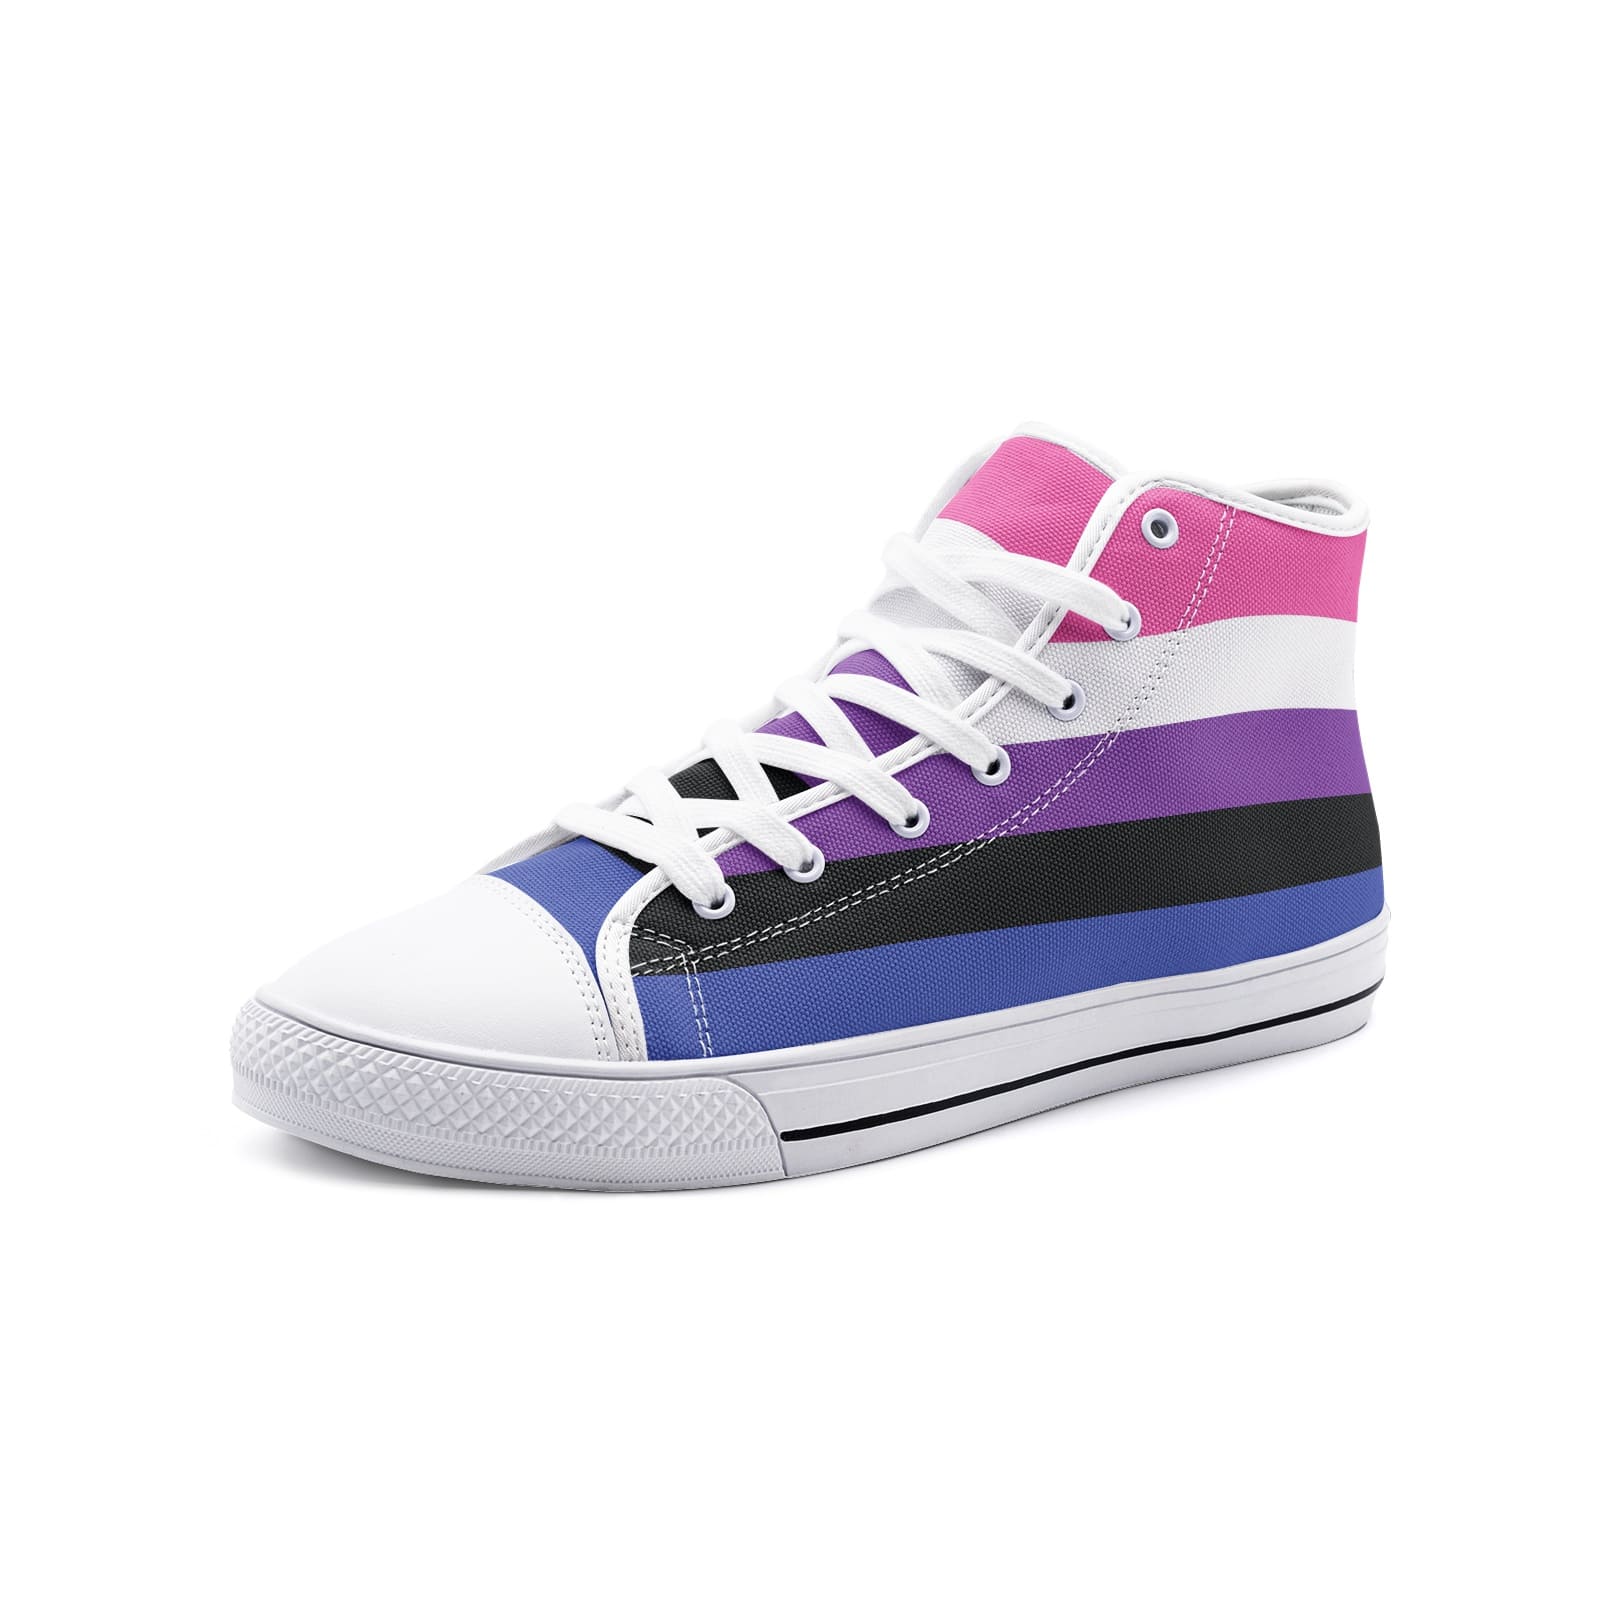 genderfluid shoes, gender fluid pride flag sneakers, white